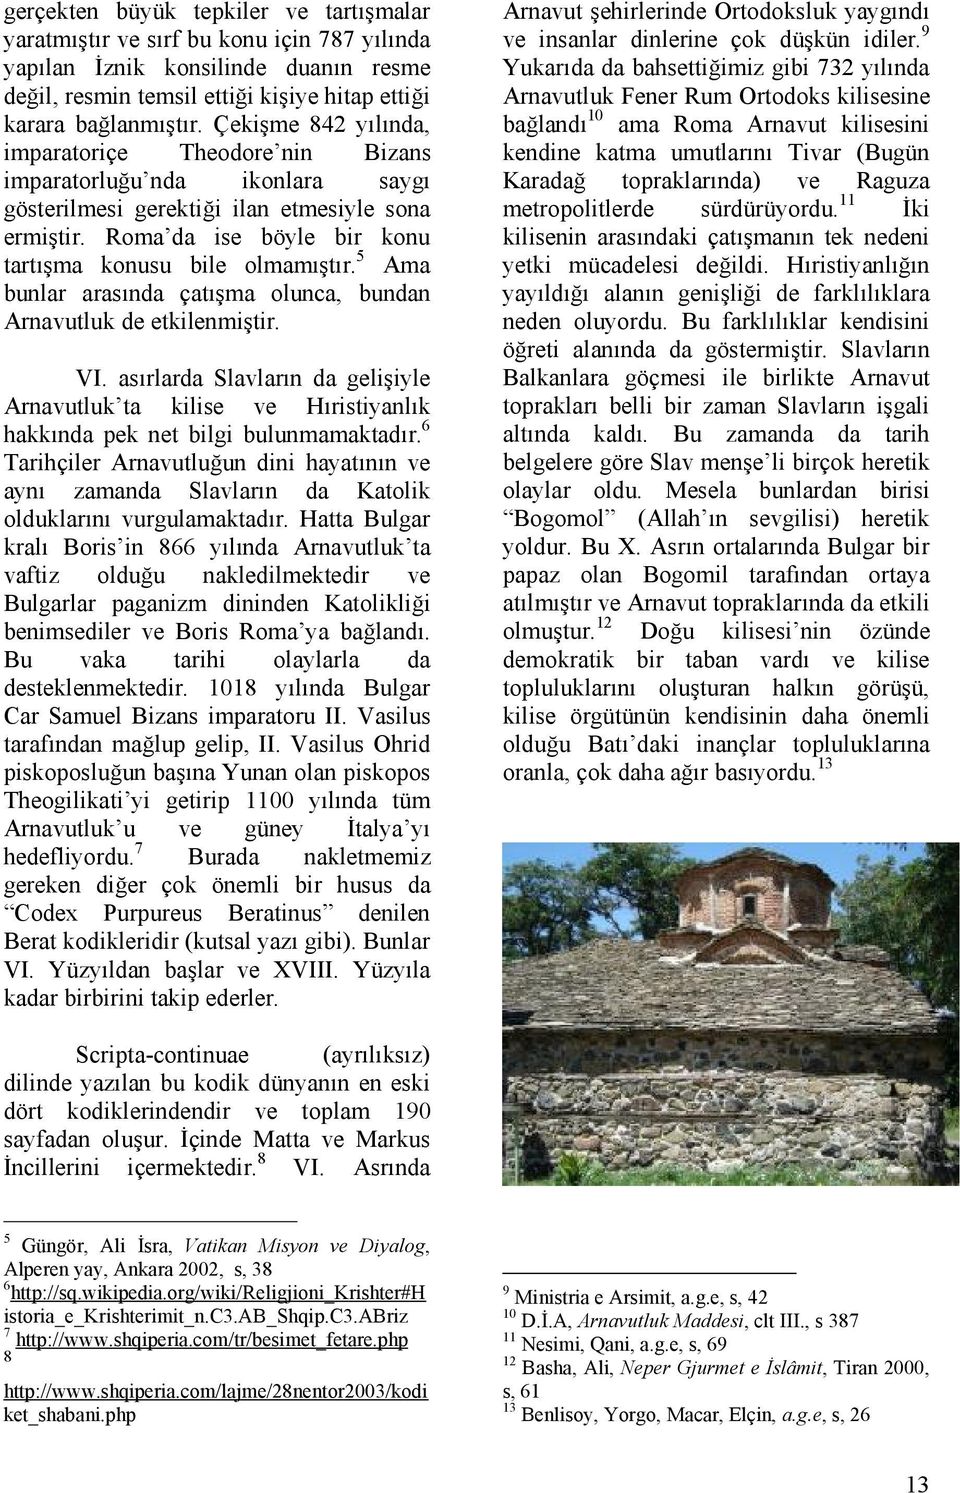 5 Ama bunlar arasında çatışma olunca, bundan Arnavutluk de etkilenmiştir. VI. asırlarda Slavların da gelişiyle Arnavutluk ta kilise ve Hıristiyanlık hakkında pek net bilgi bulunmamaktadır.